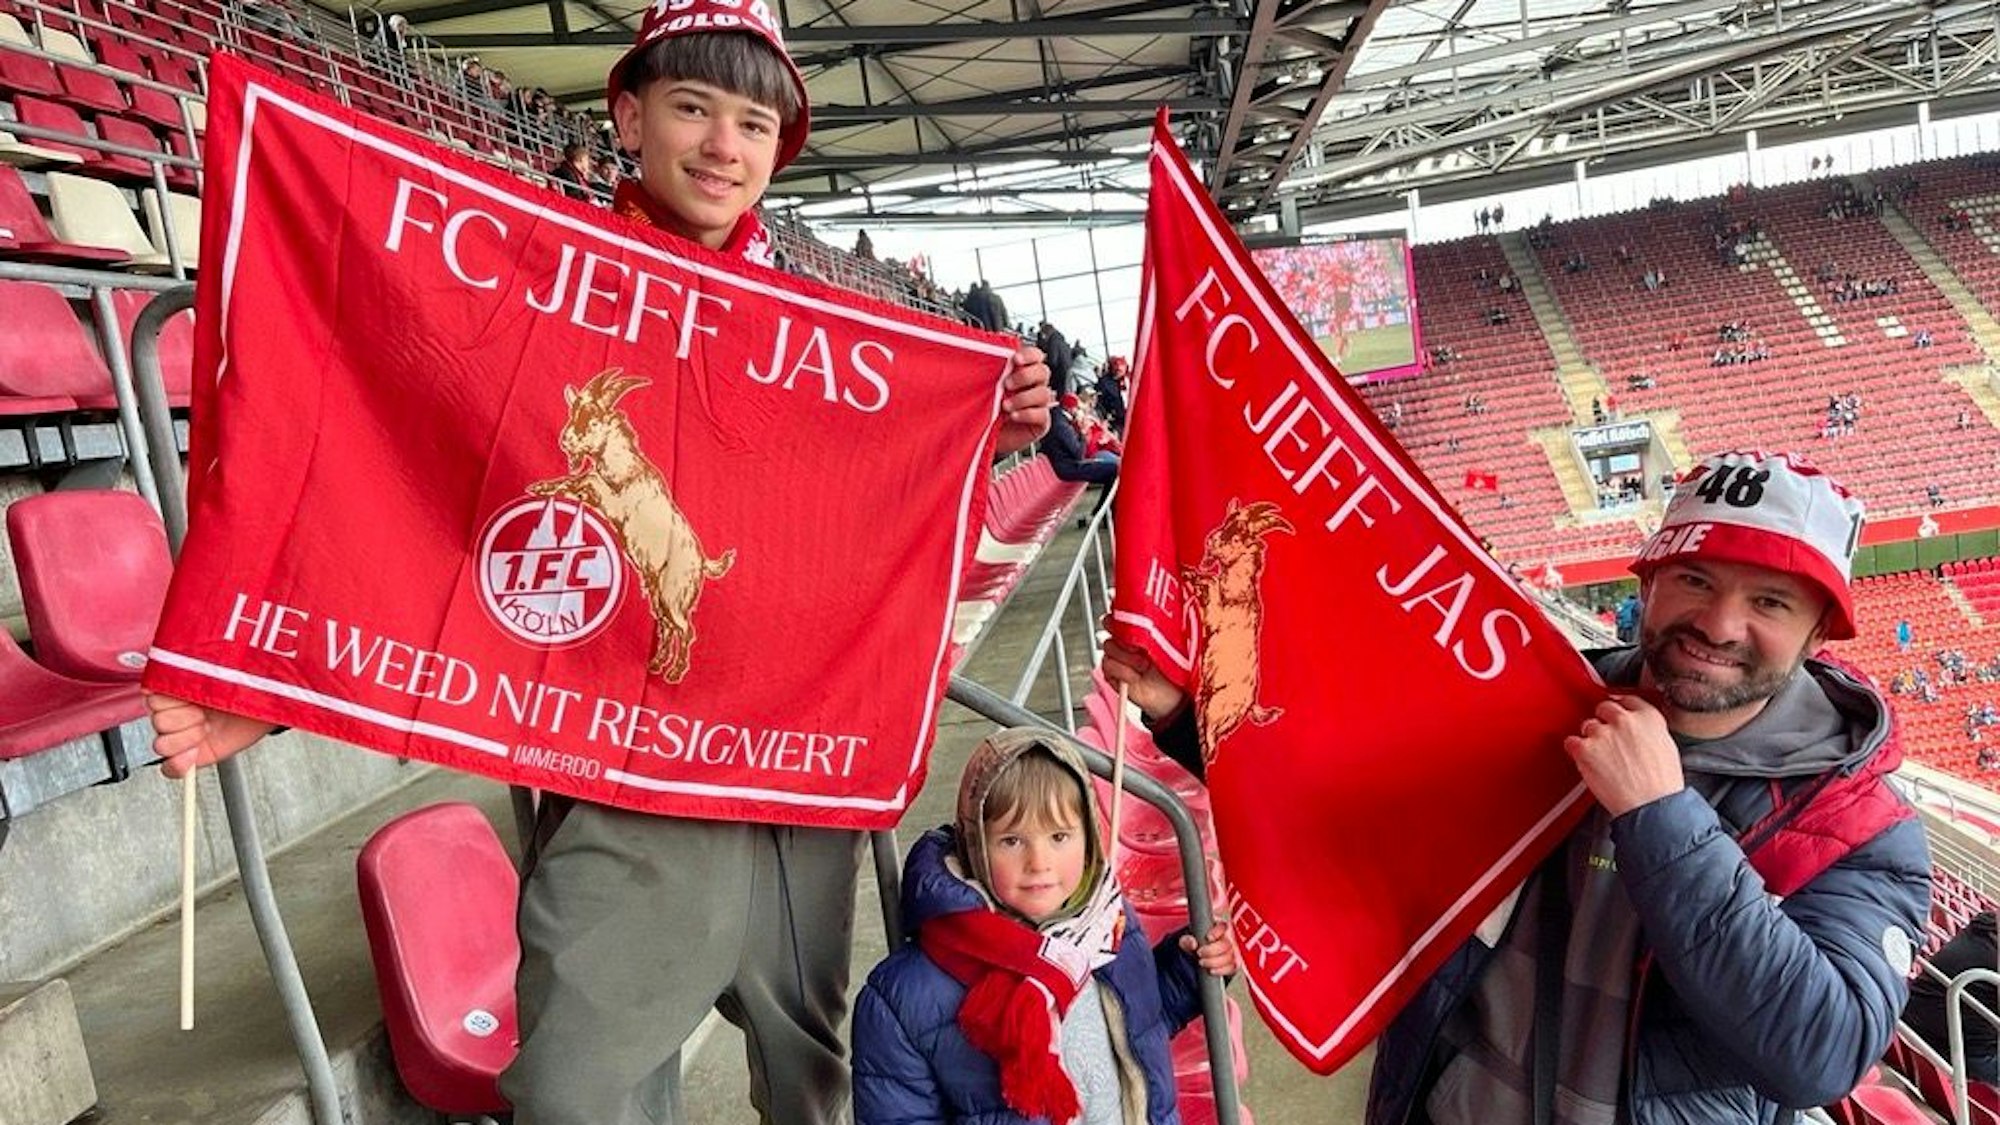 Die Kölner Fans Maryo, Noah, und Gigi (v.l.) präsentieren Fahnen mit dem Kölner Rettungs-Motto „FC jeff Jas. He weed nit resigniert“, vor dem Spiel des 1. FC Köln gegen Darmstadt 98.